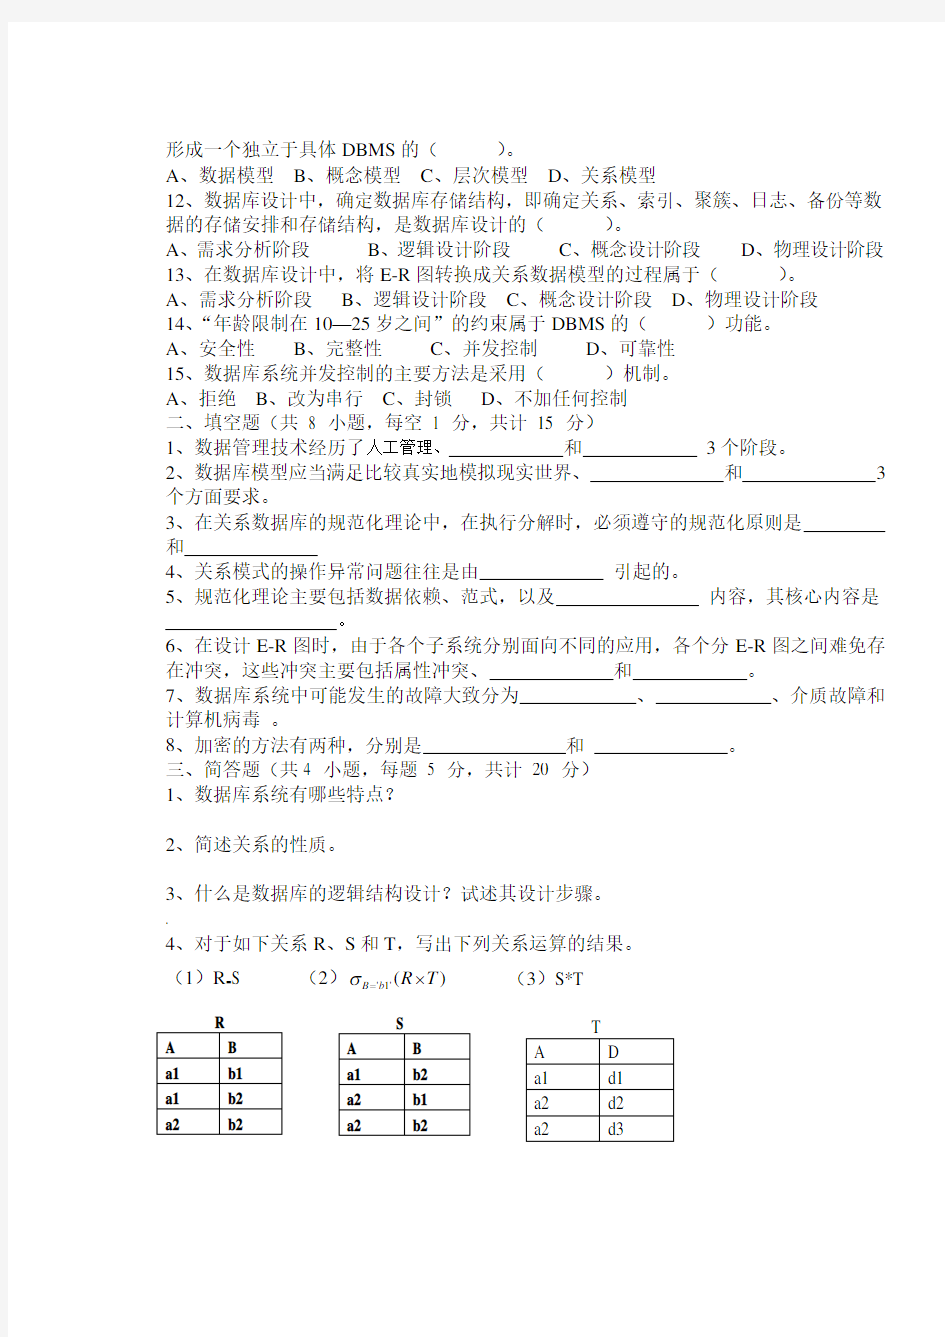 2012-2013数据库试卷A 徐州工程学院